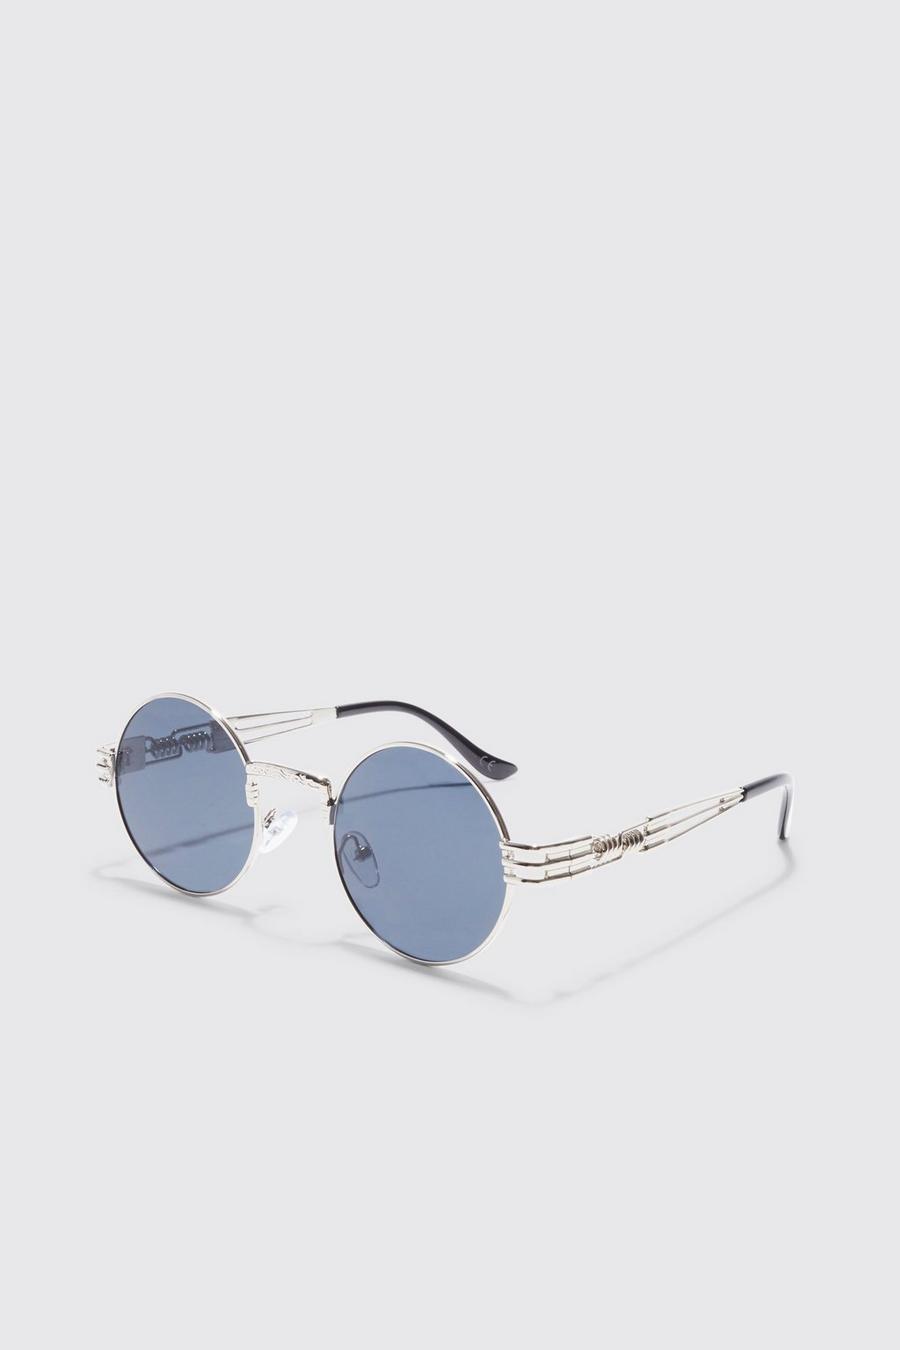 Silver Round Retro Sunglasses